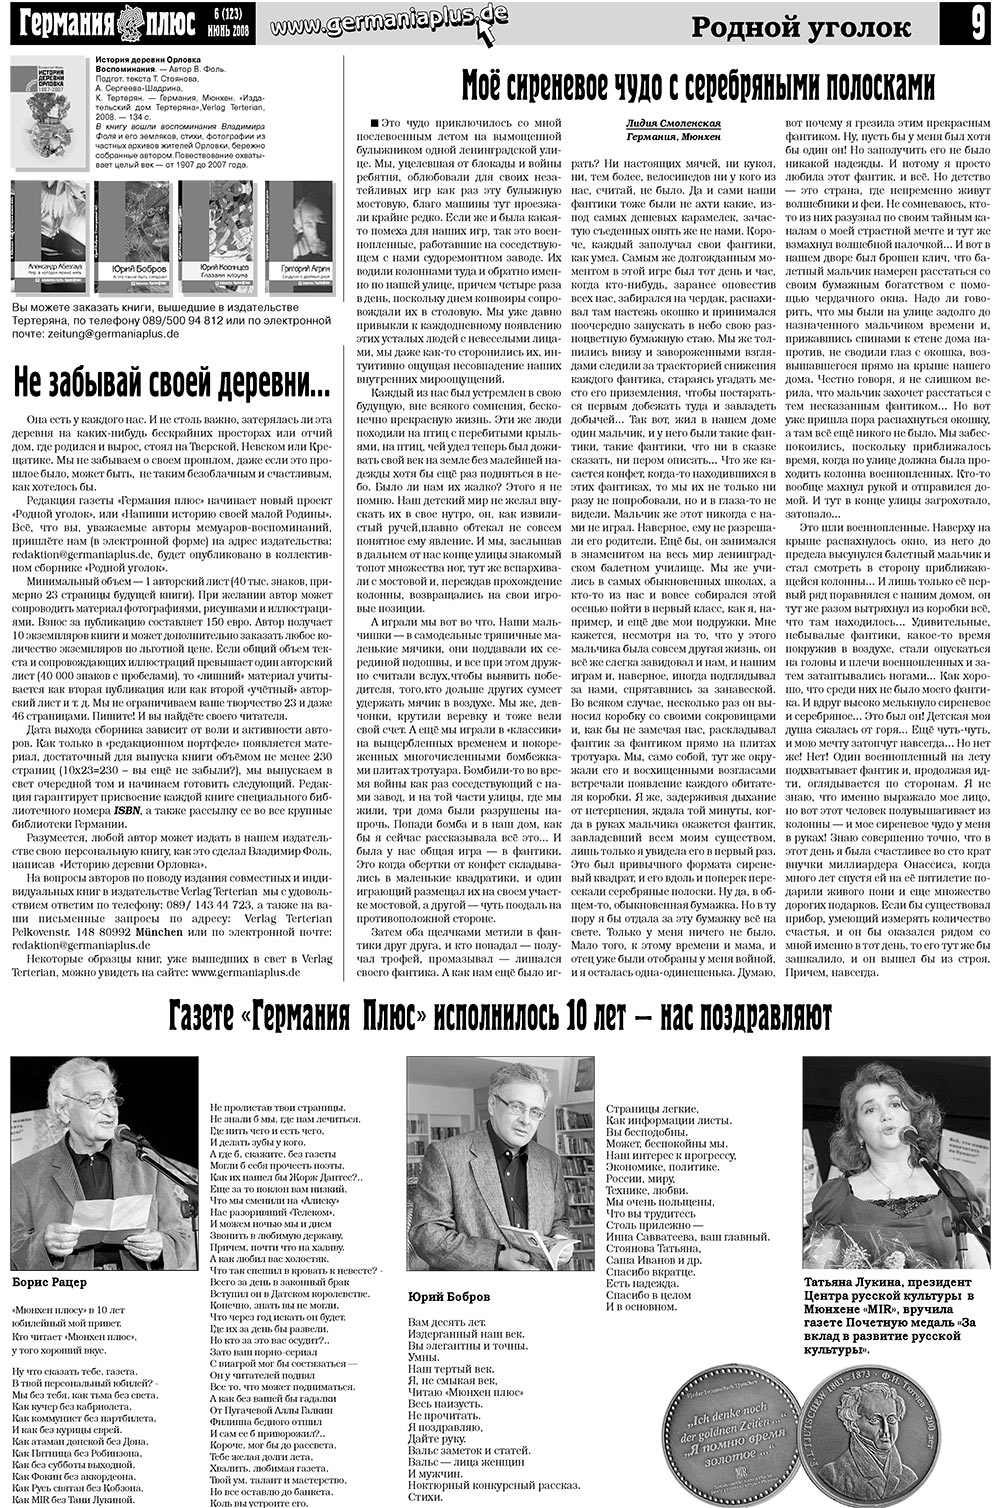 Германия плюс (газета). 2008 год, номер 6, стр. 13